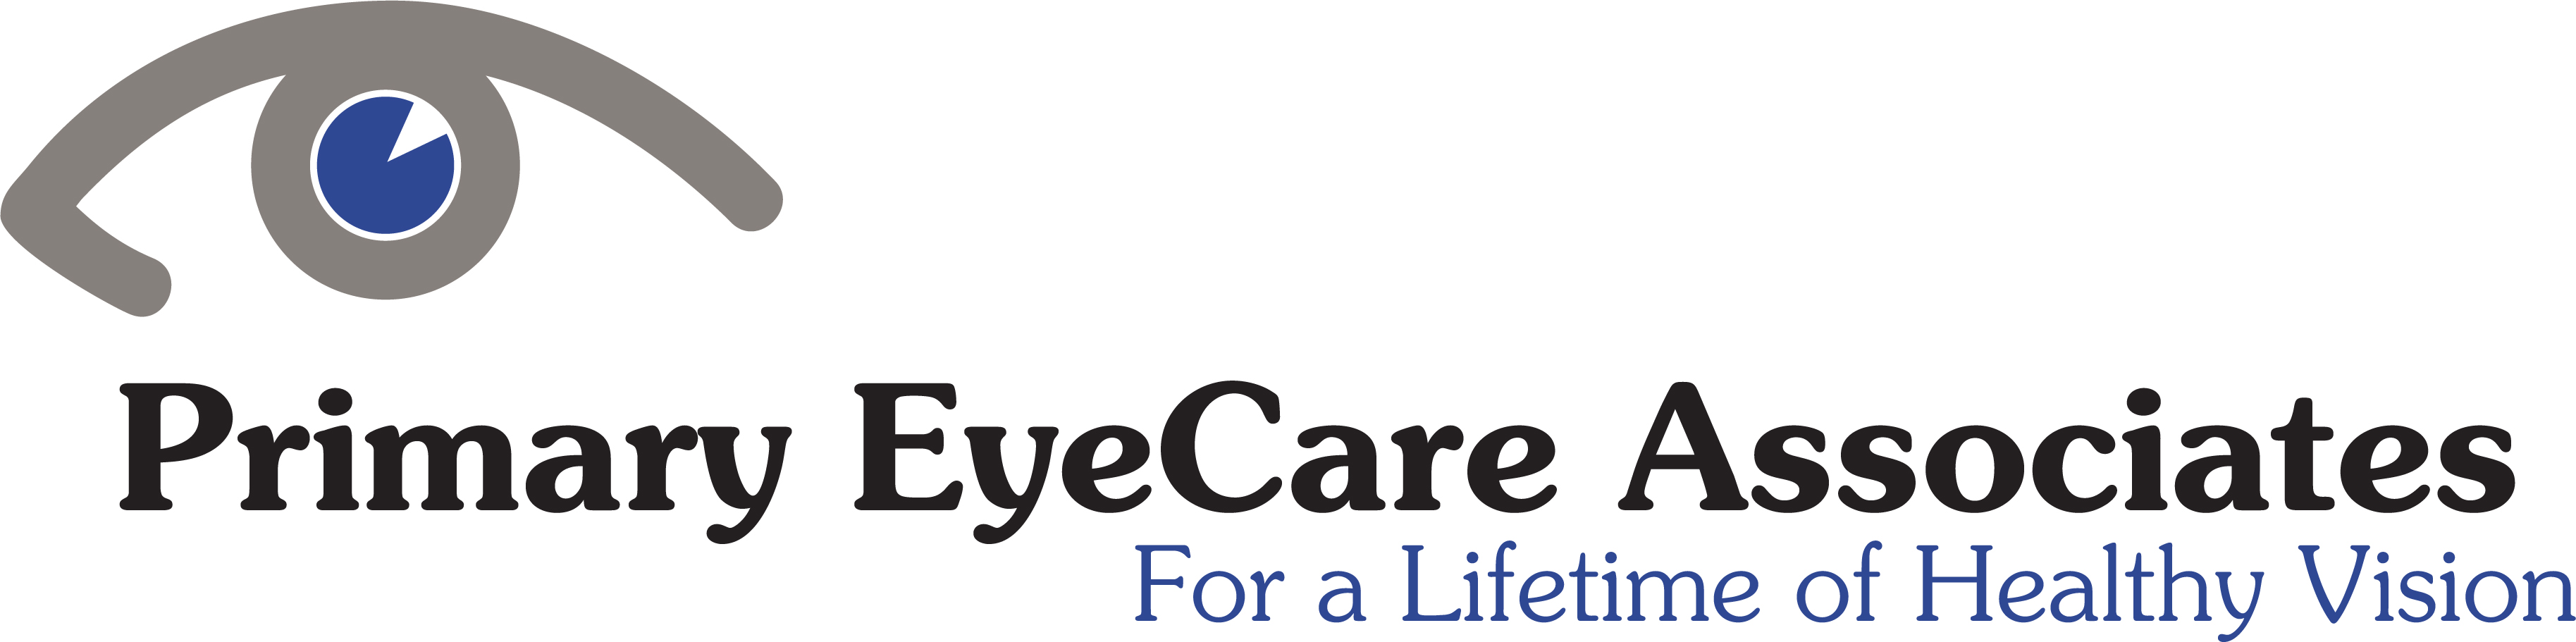 Primary EyeCare Associates